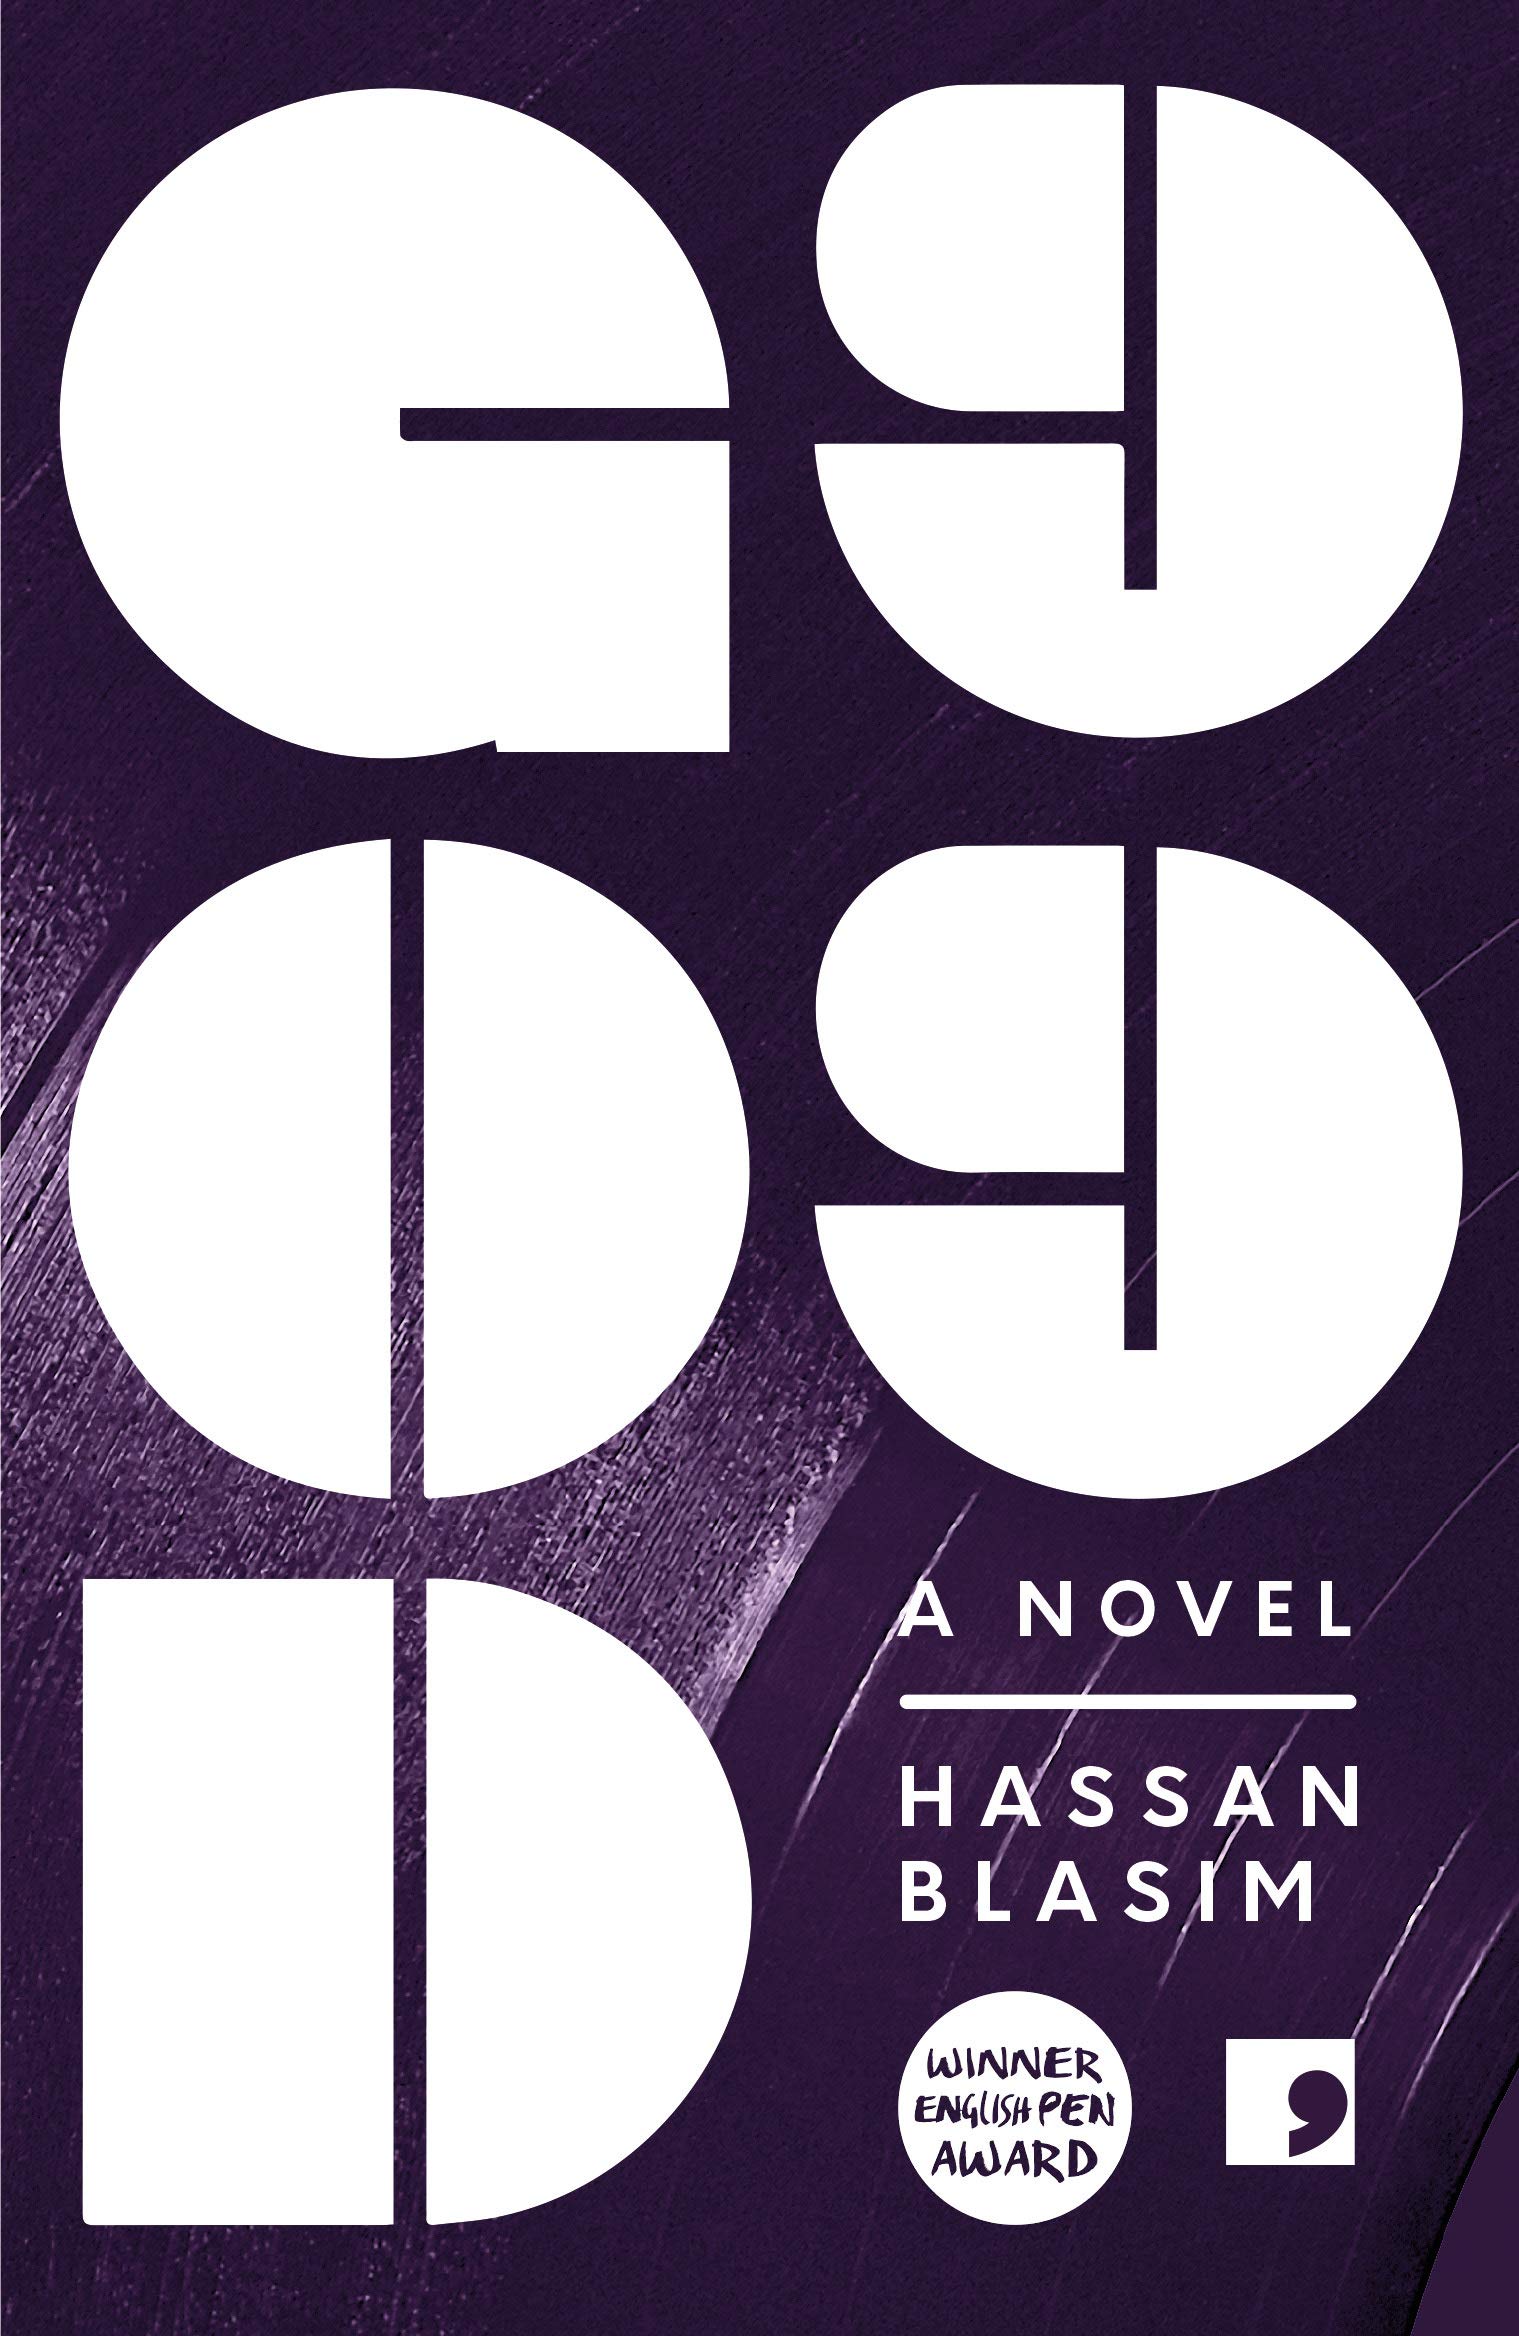 Cover von Hassan Blasims "God99" (erschienen bei Comma Press)